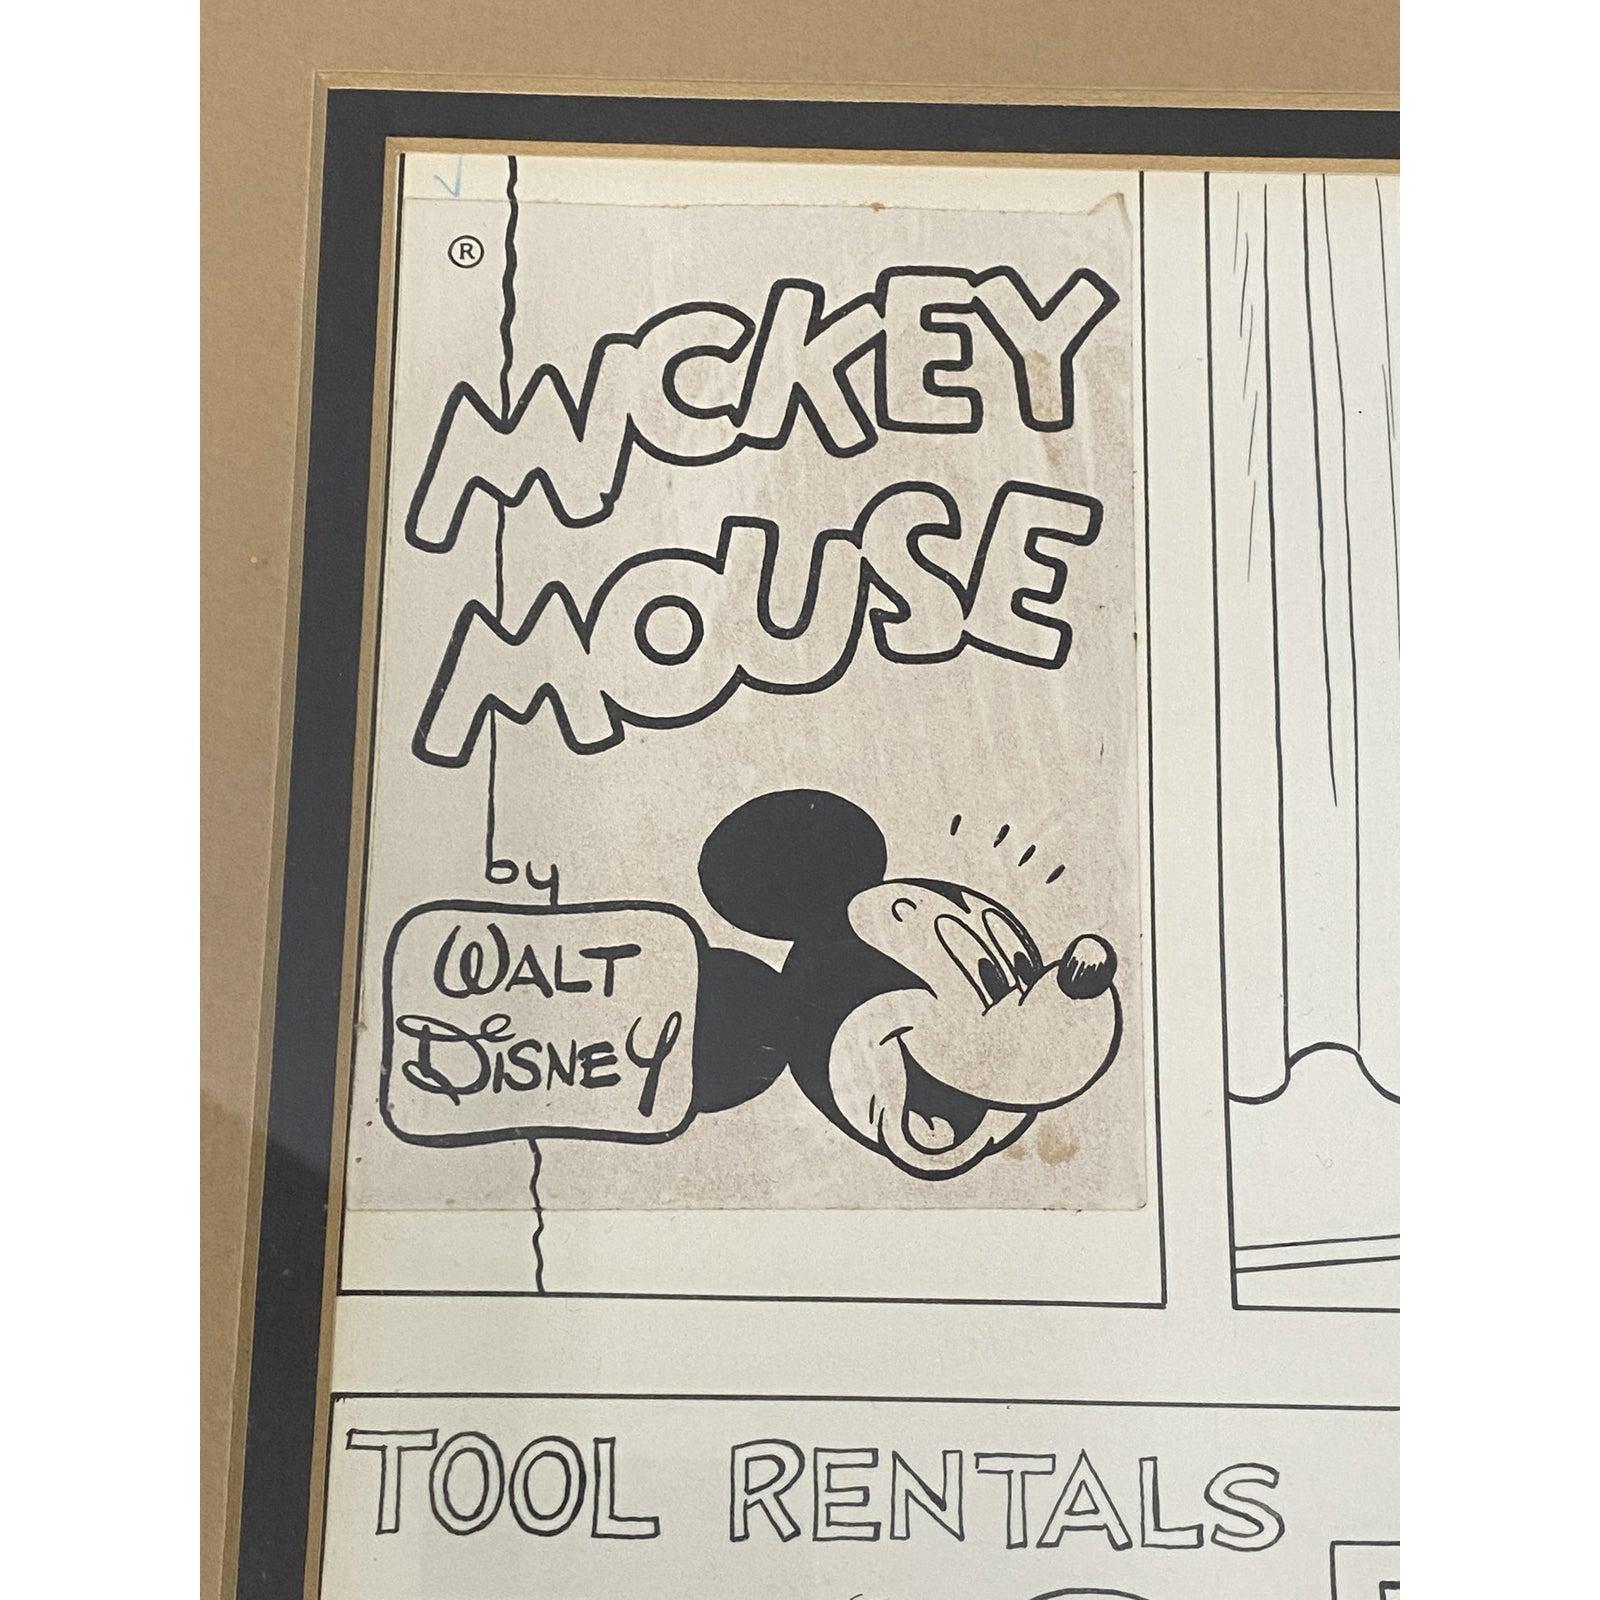 Mickey Mouse, Original Comic-Streifen-Kunst C.1967

Original Feder und Tinte mit Mischtechnik

Abmessungen 24,25